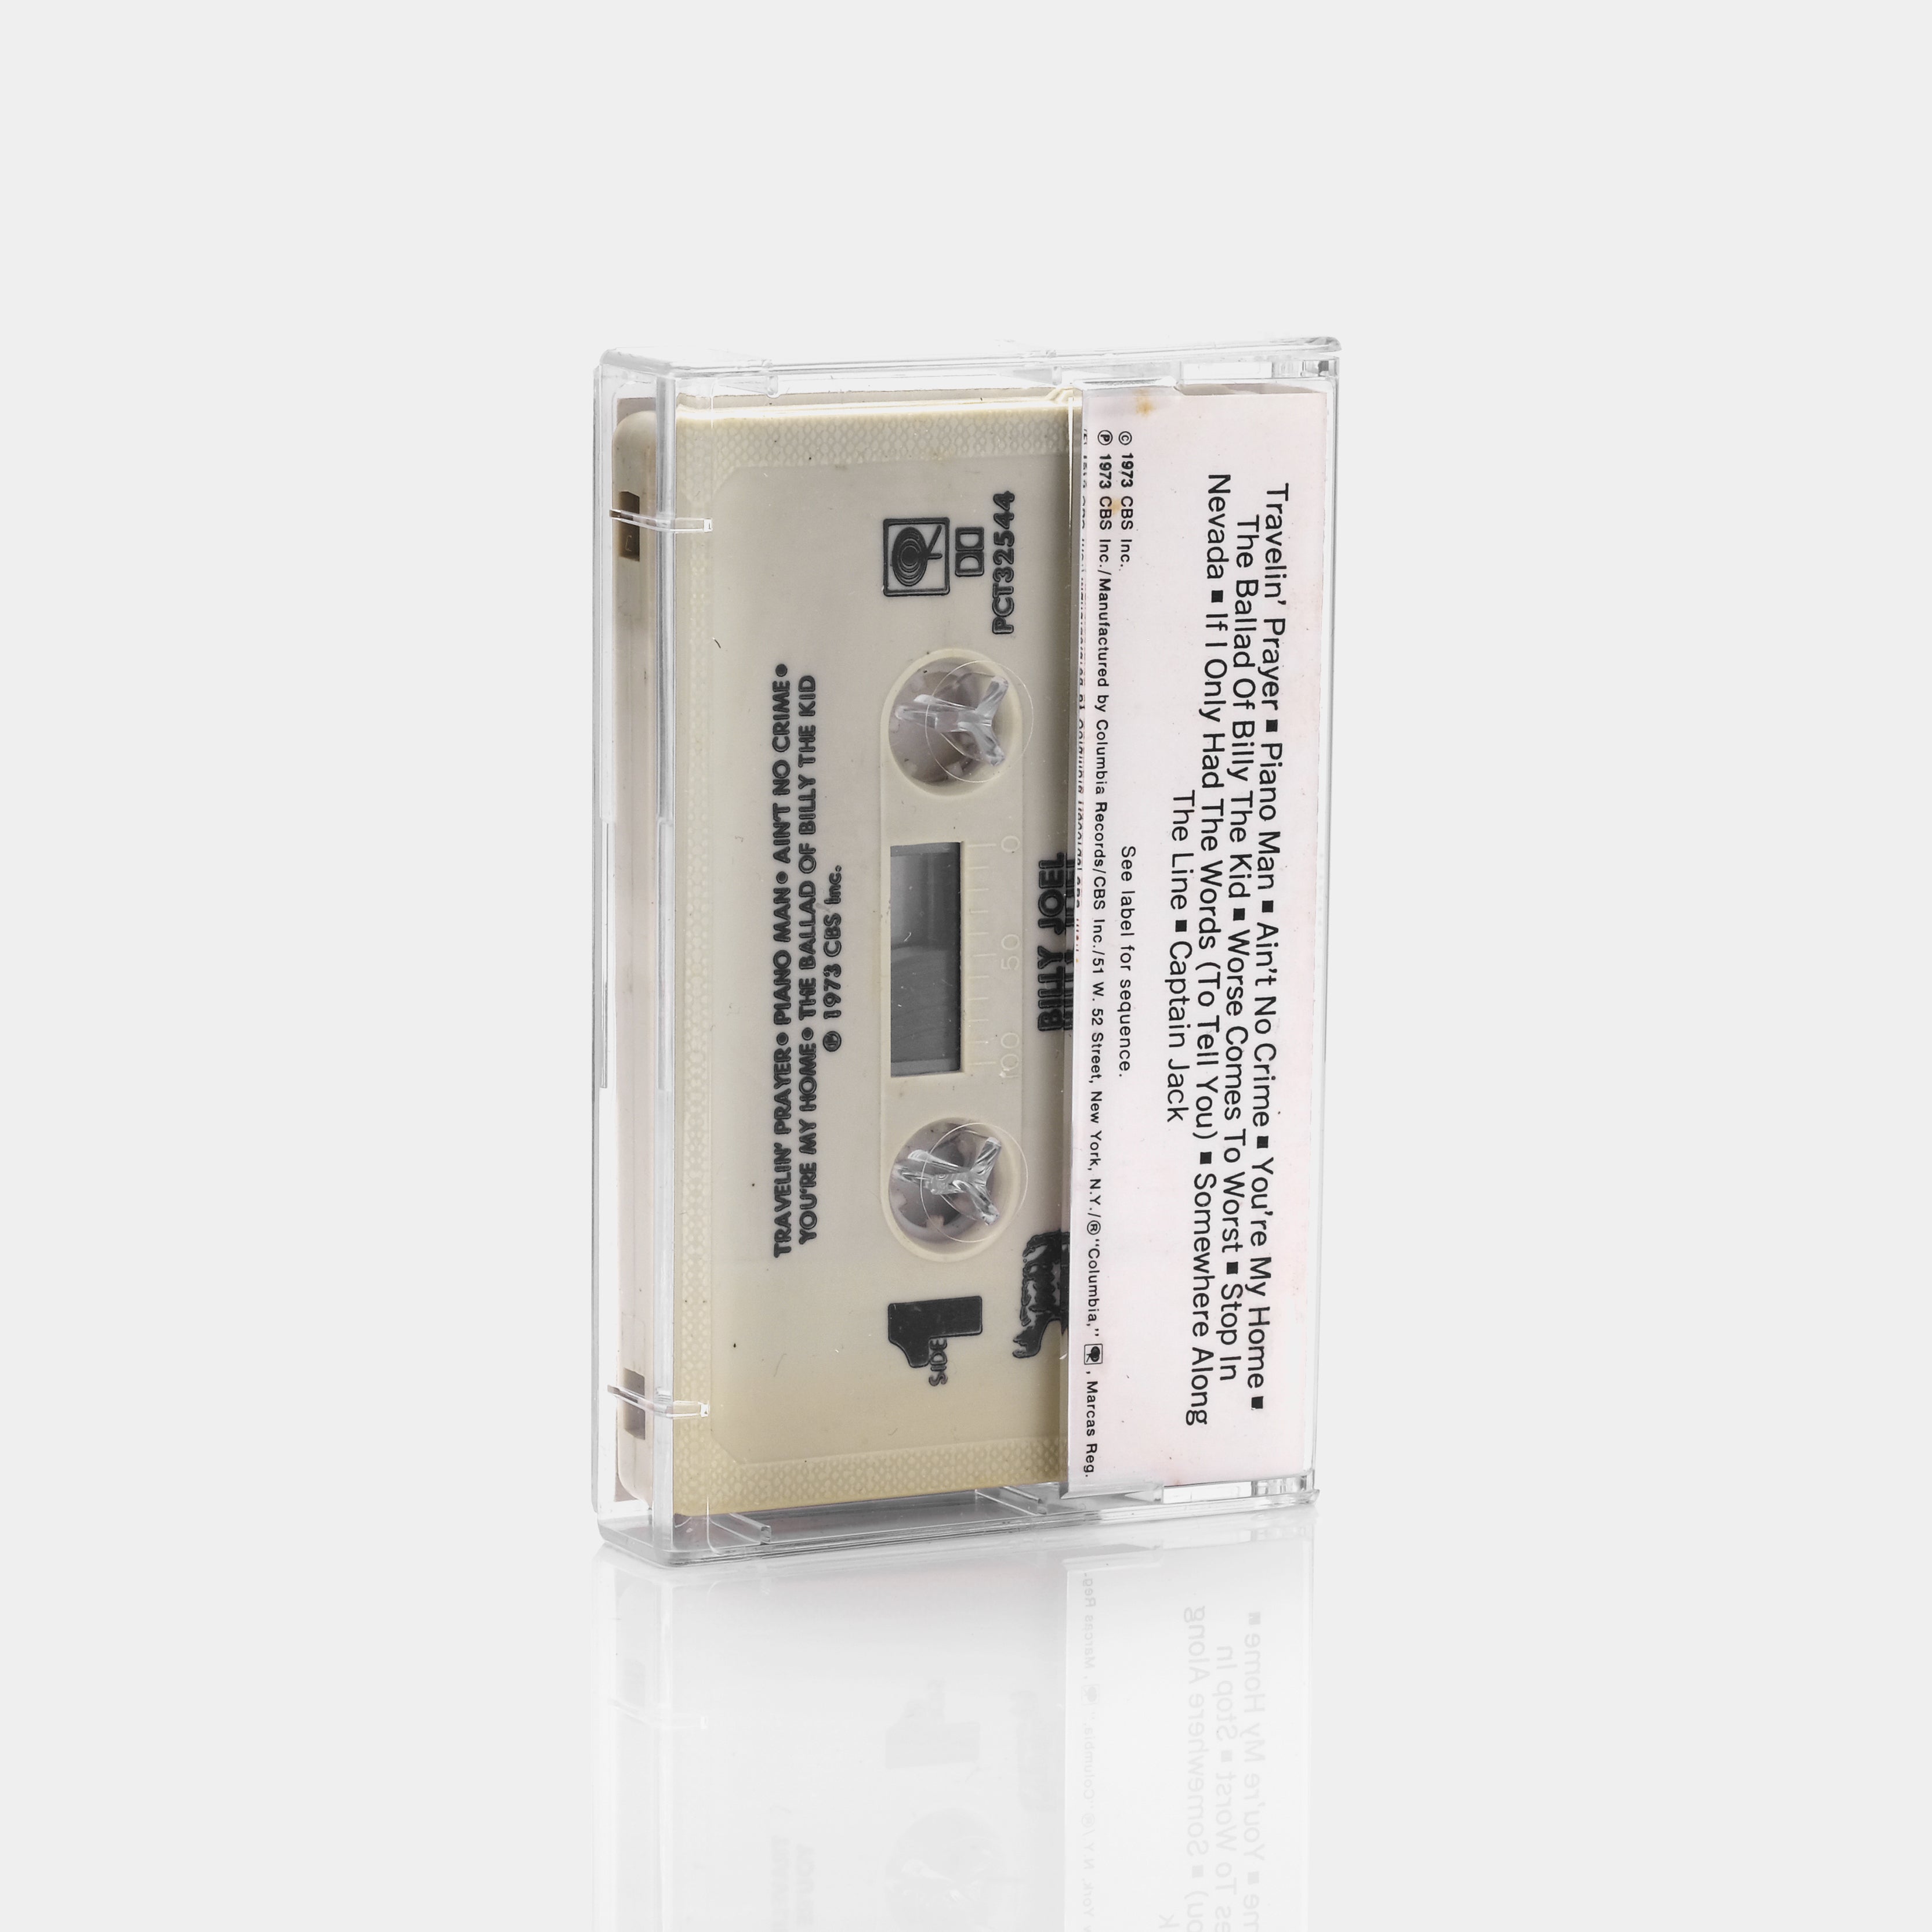 Billy Joel - Piano Man Cassette Tape